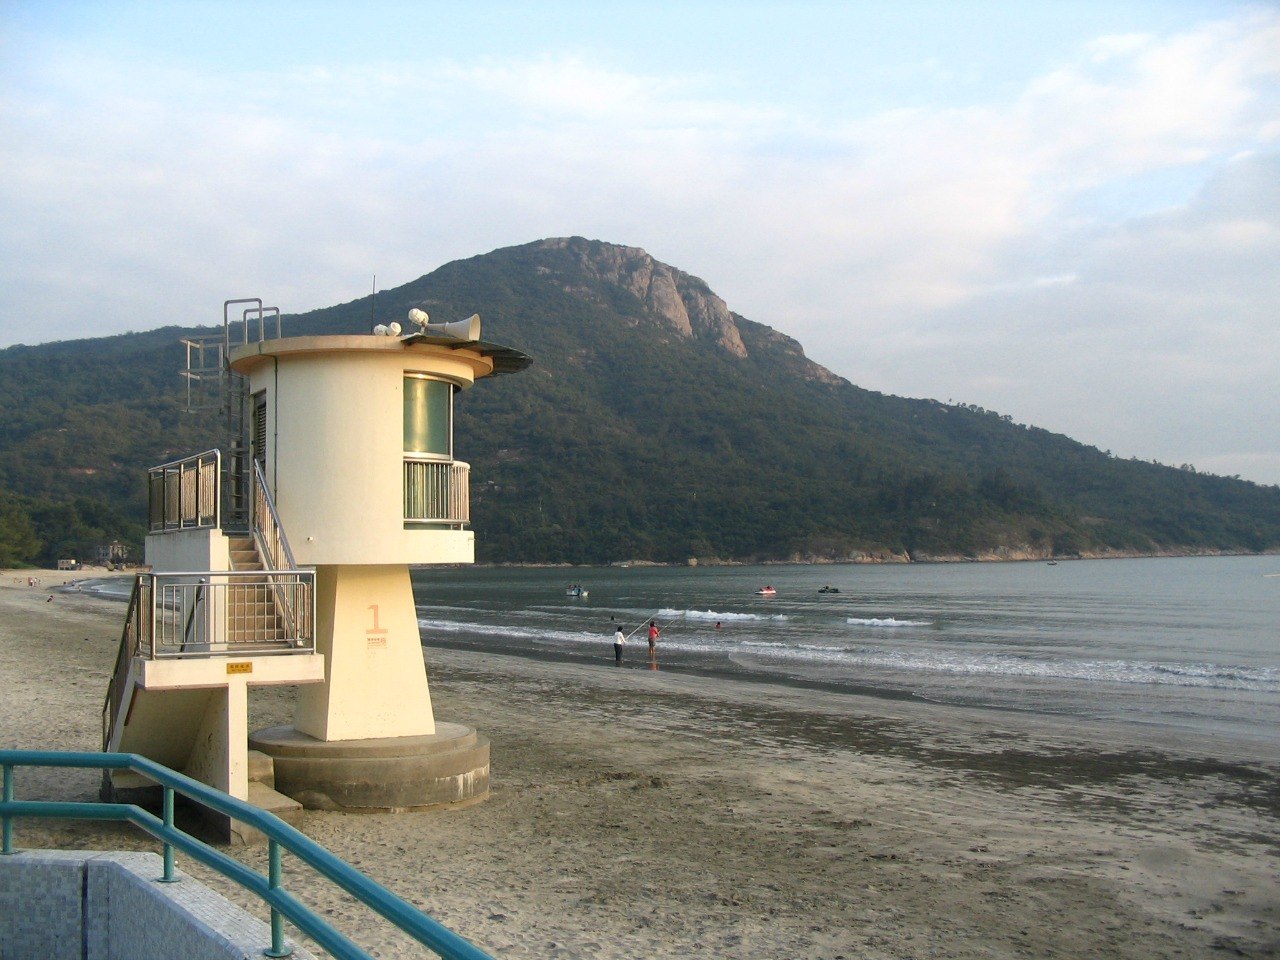 Pui O Beach, Lantau Island